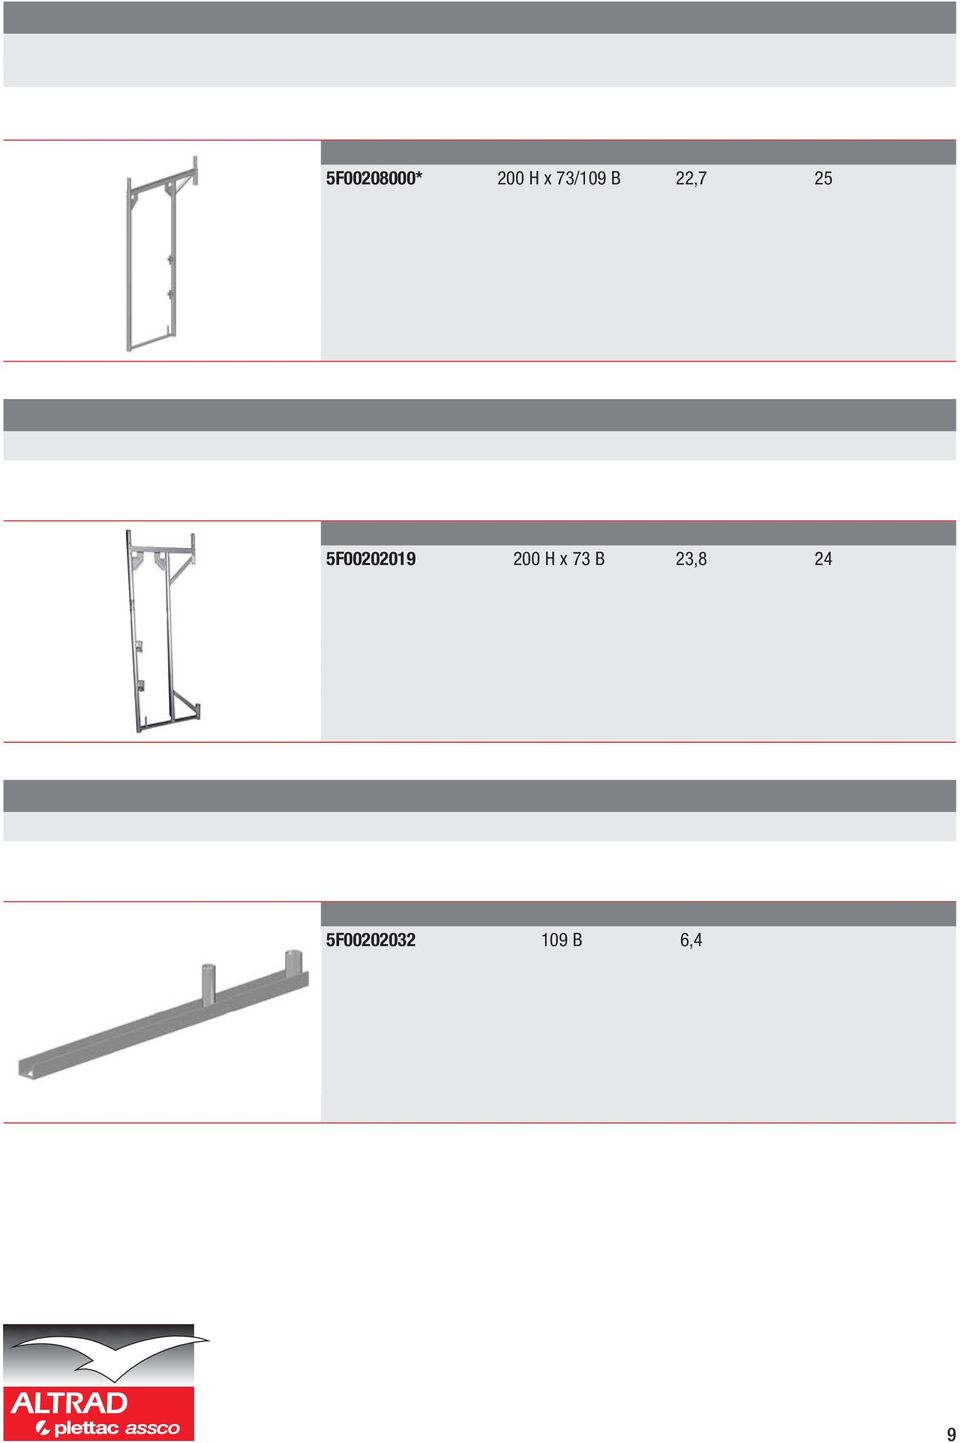 Stål-vertikalram med fast konsol 5F00208000* 200 H x 73/109 B 22,7 25 Stål-vertikalram för balustrader Kan användas vid arbete